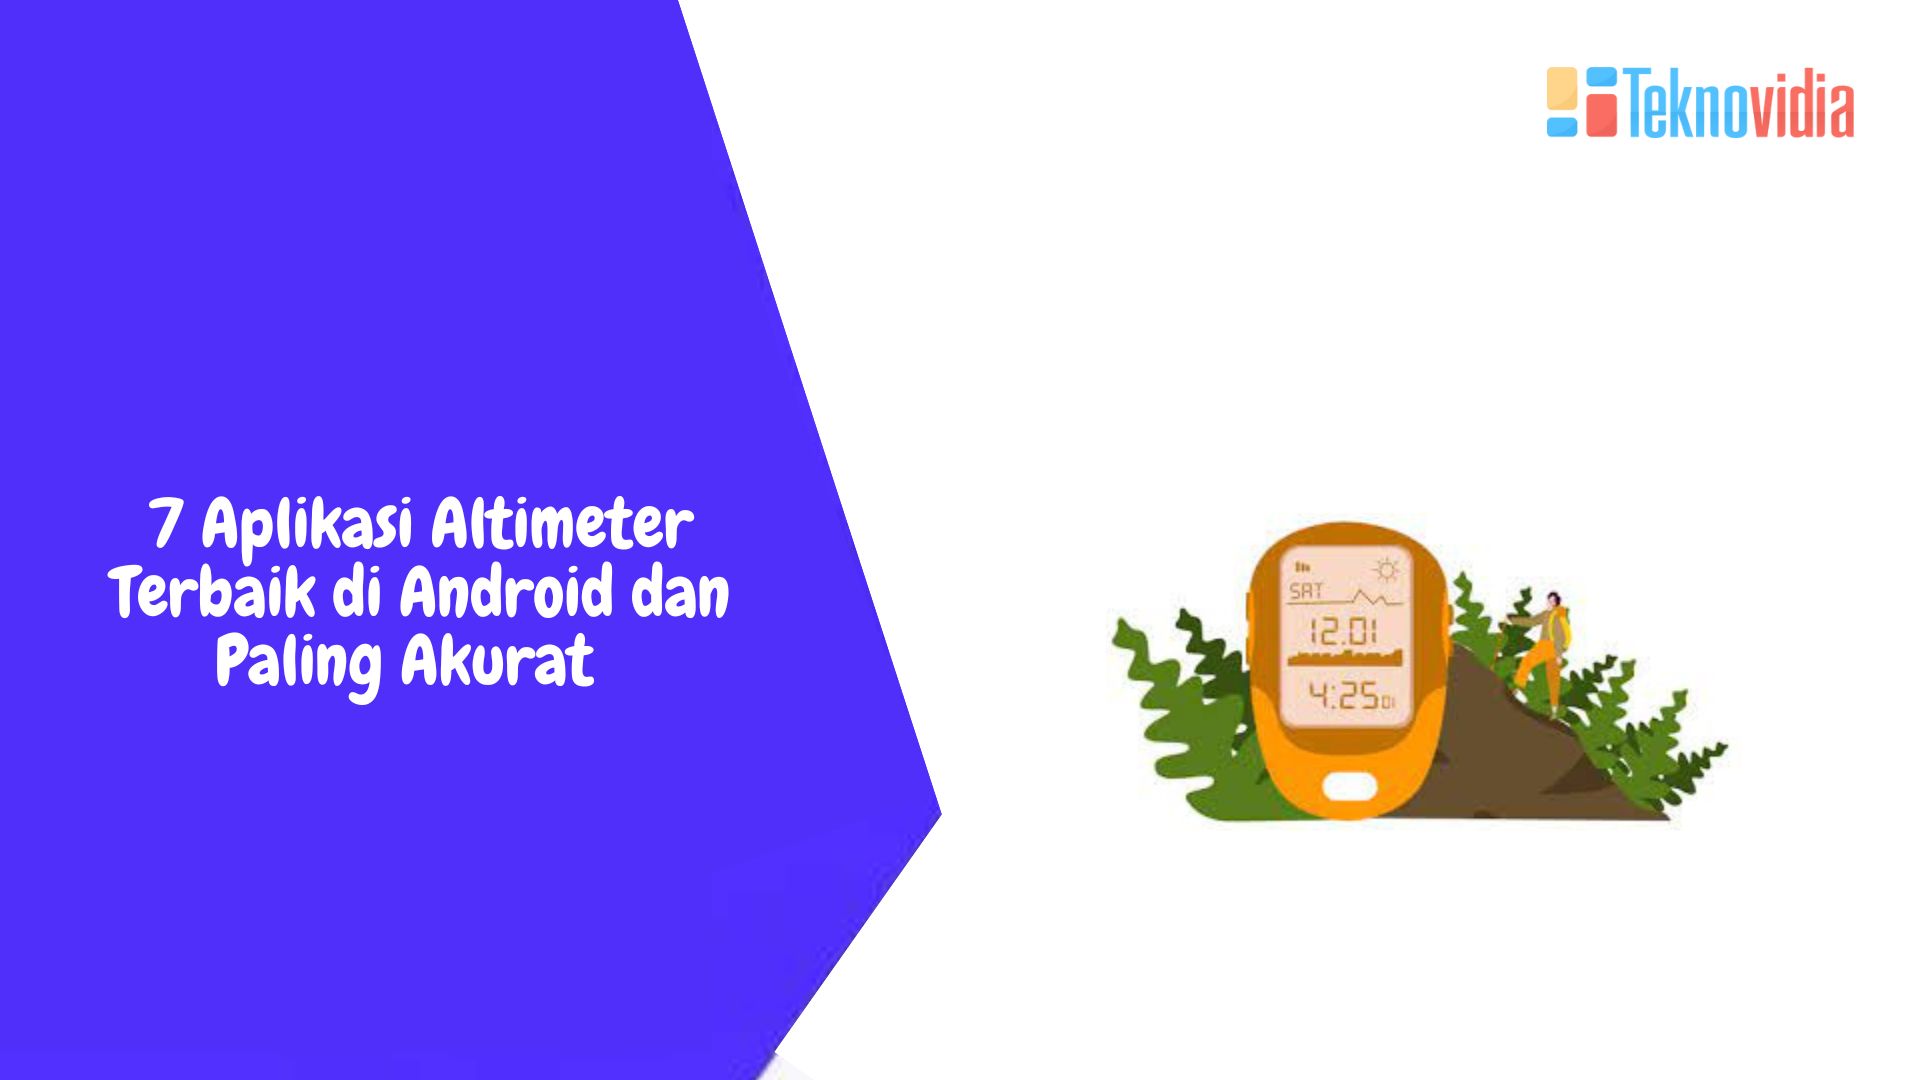 7 Aplikasi Altimeter Terbaik di Android dan Paling Akurat